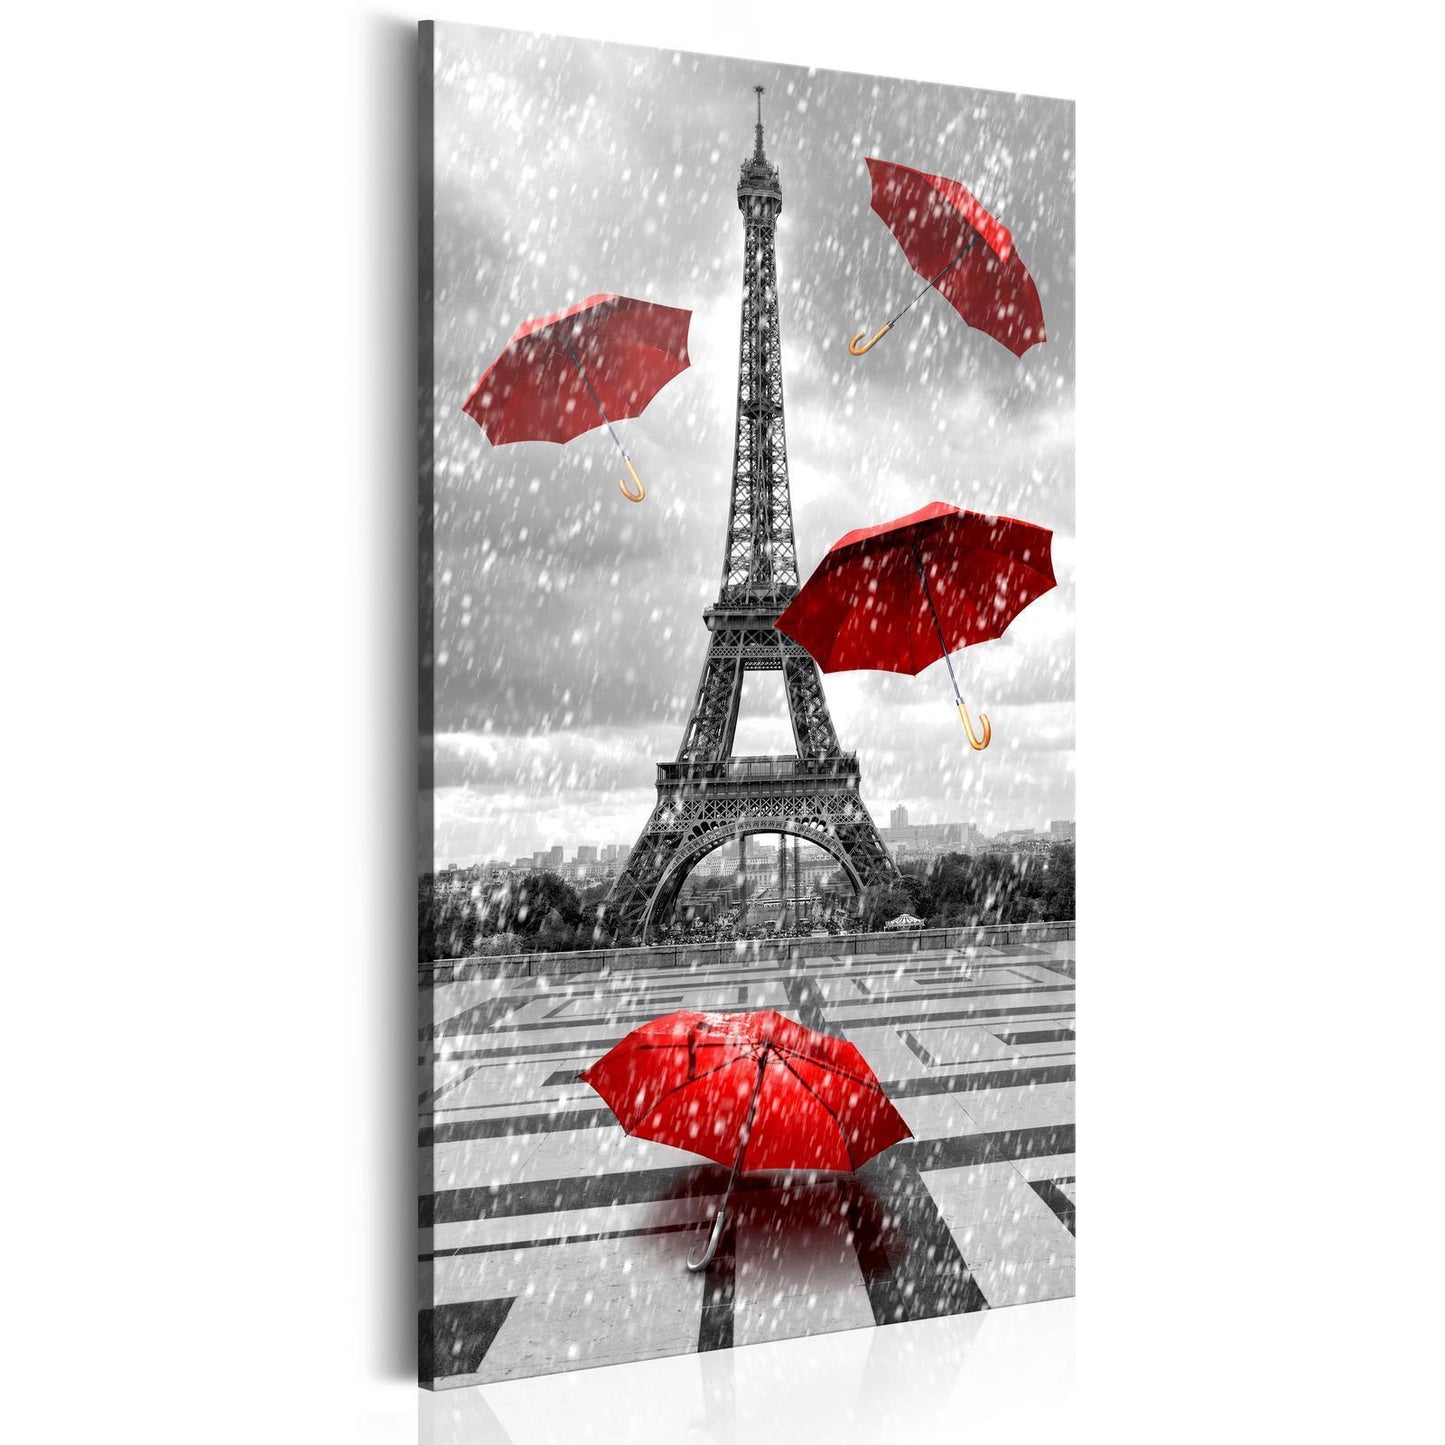 Painting - Paris: Red Umbrellas